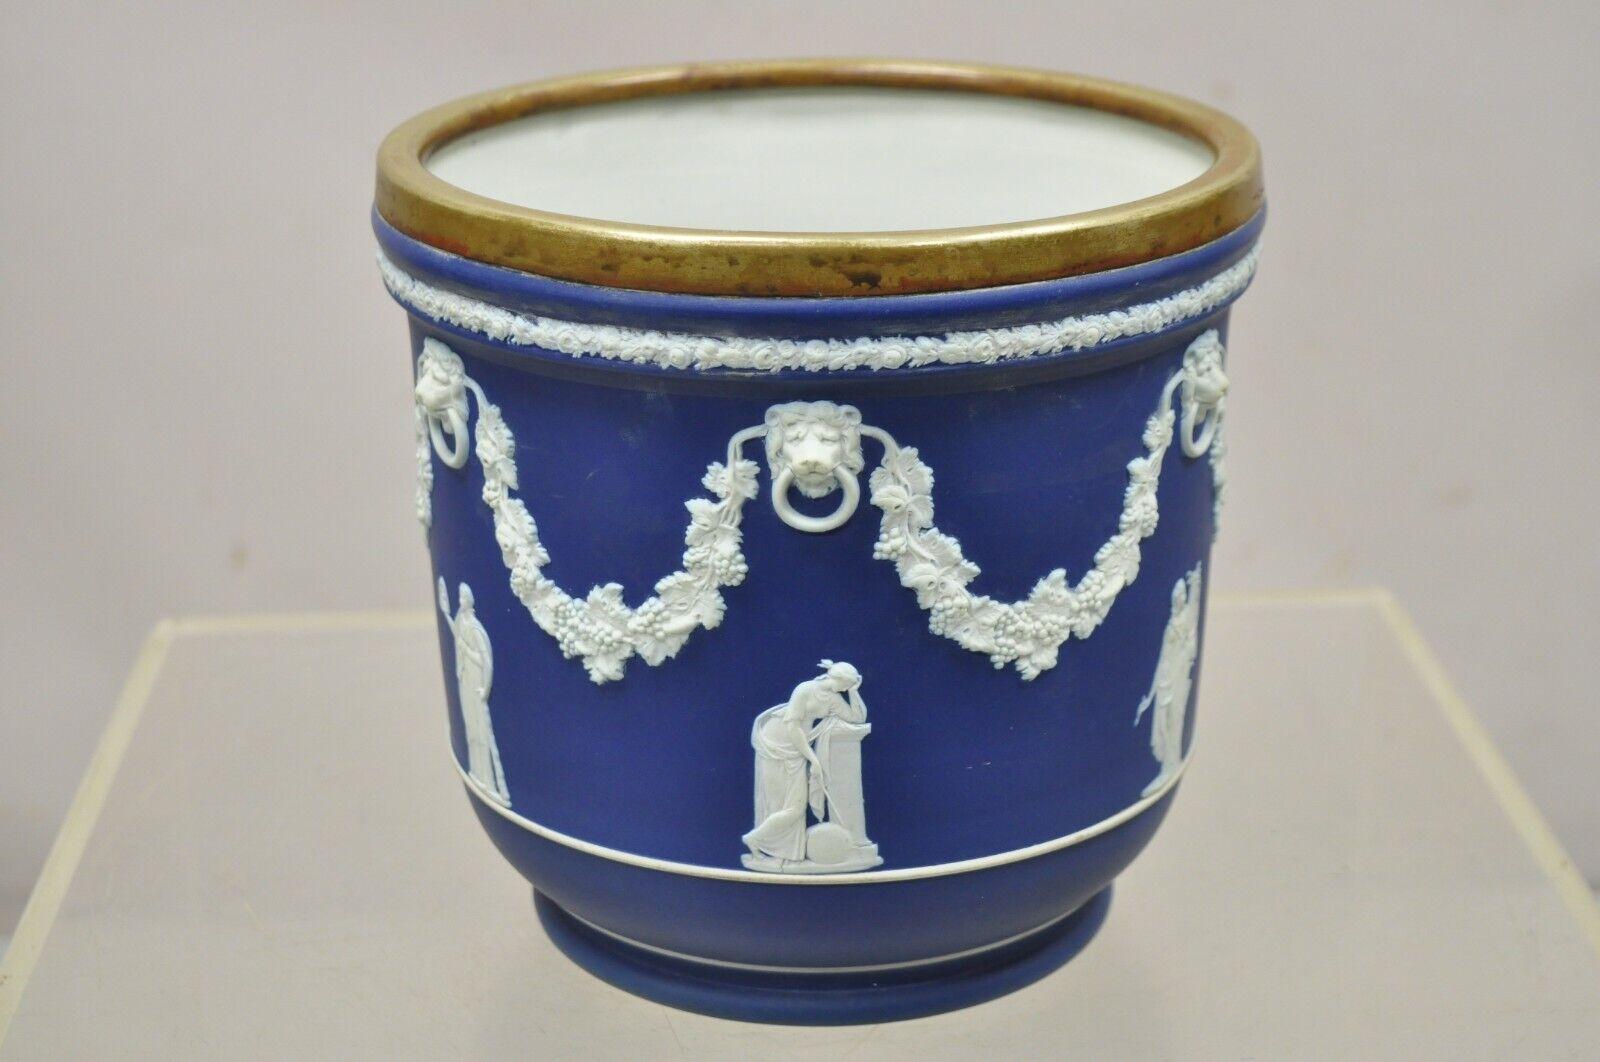 Antique Wedgwood England Blue Jasperware Cache Pot with Brass Rim. L'objet présente un bord en laiton avec une patine magnifique, des timbres d'origine sur le dessous. Vers la fin du 19e siècle ou le début du 20e siècle . Dimensions : 8